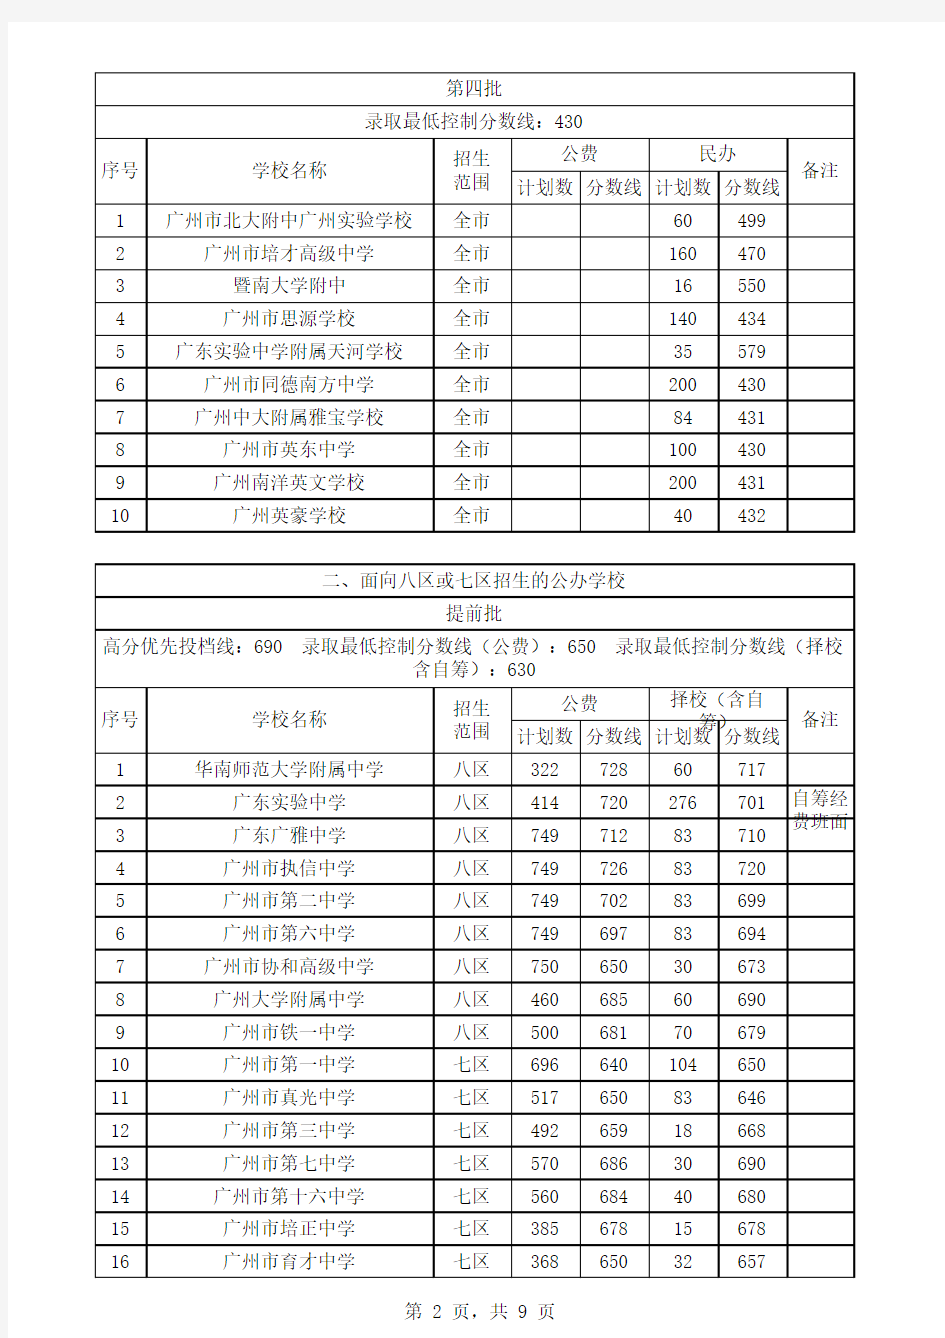 2008年广州市普通高中录取分数线